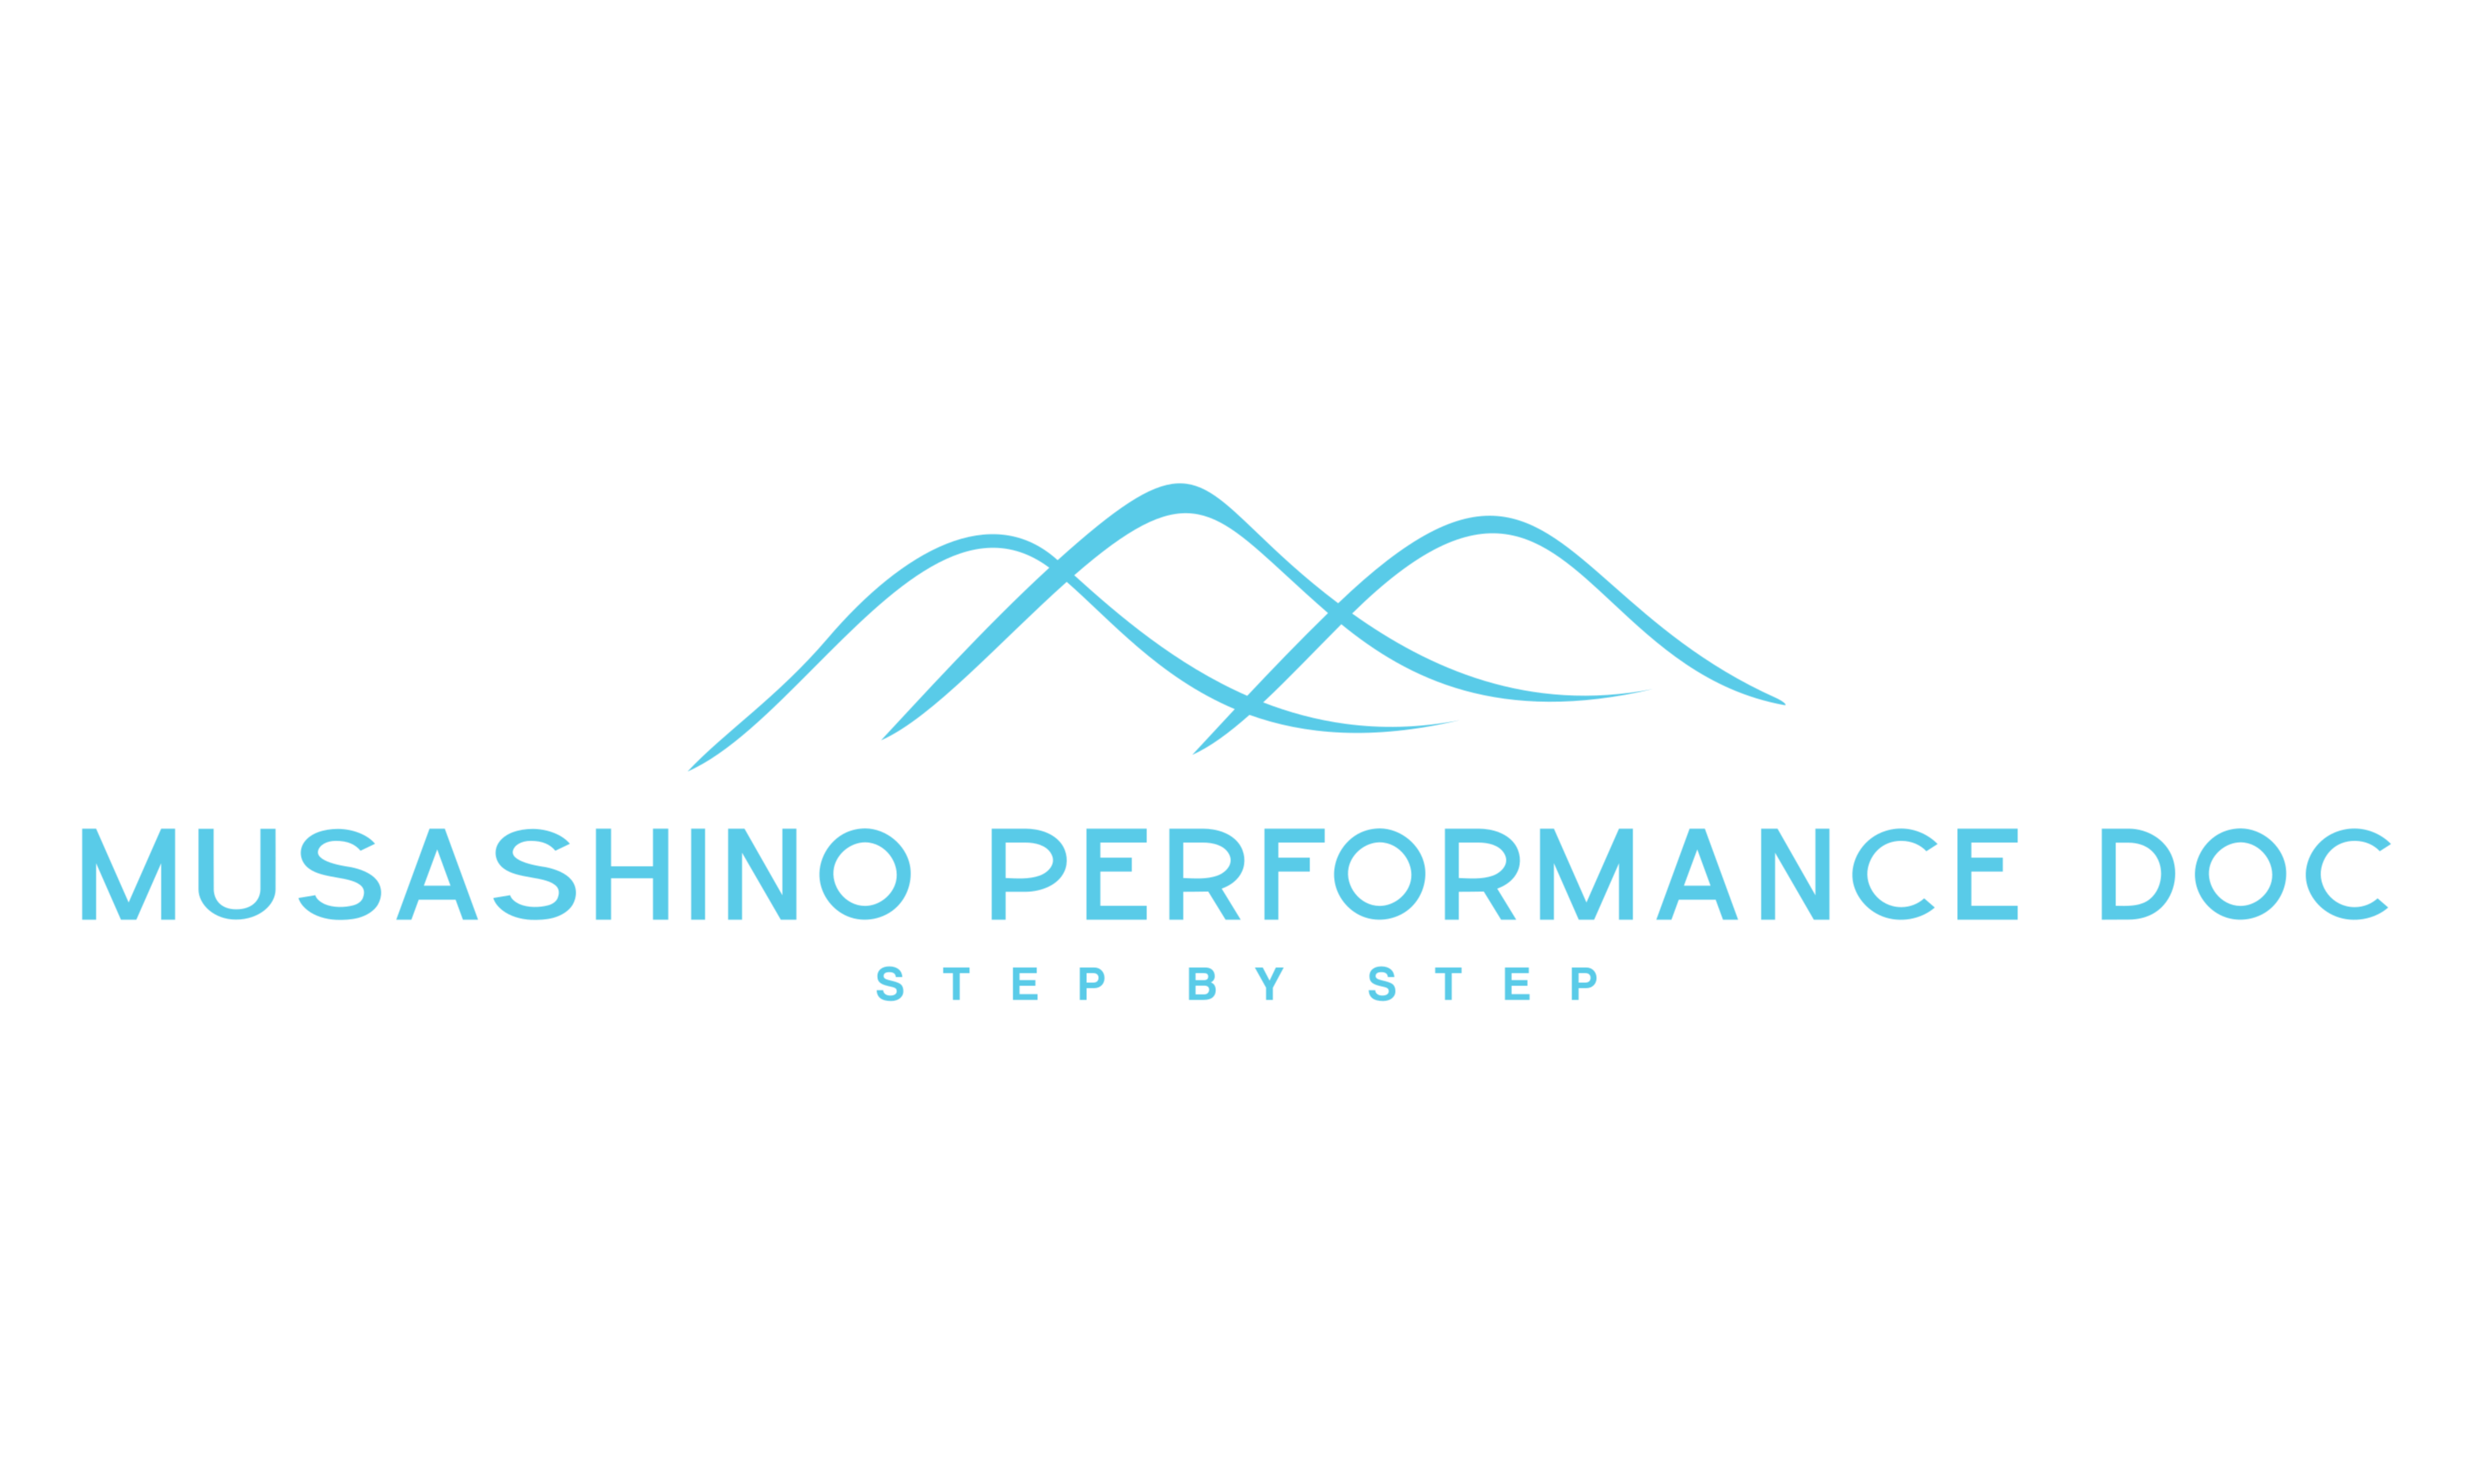 Musashino Performance Doc